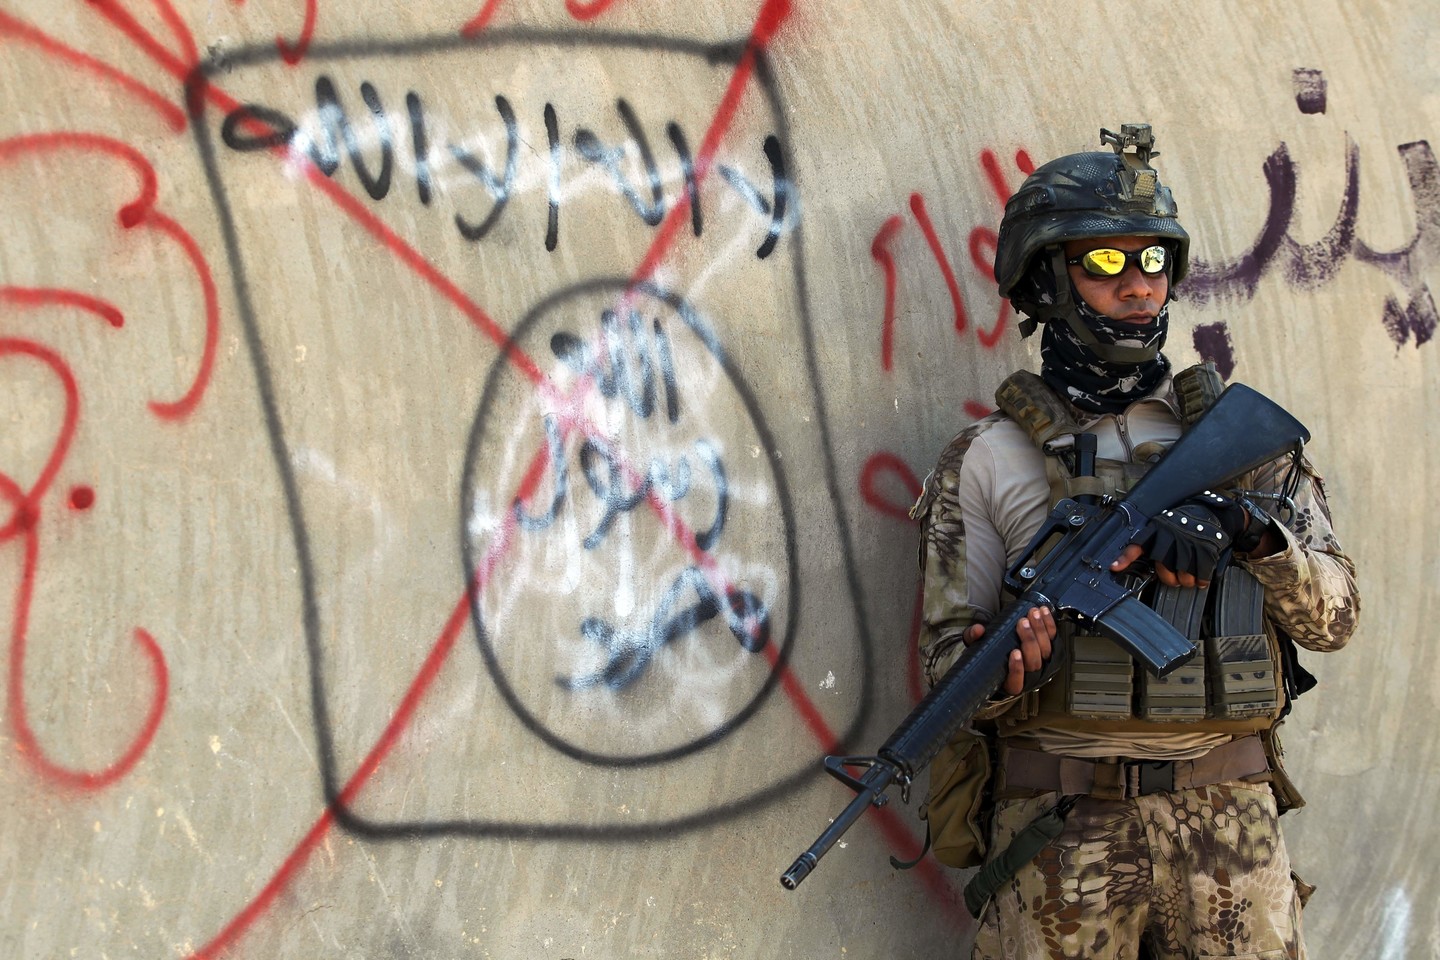  Irako kariai susirėmė su islamistais.<br> AFP/„Scanpix“ nuotr.